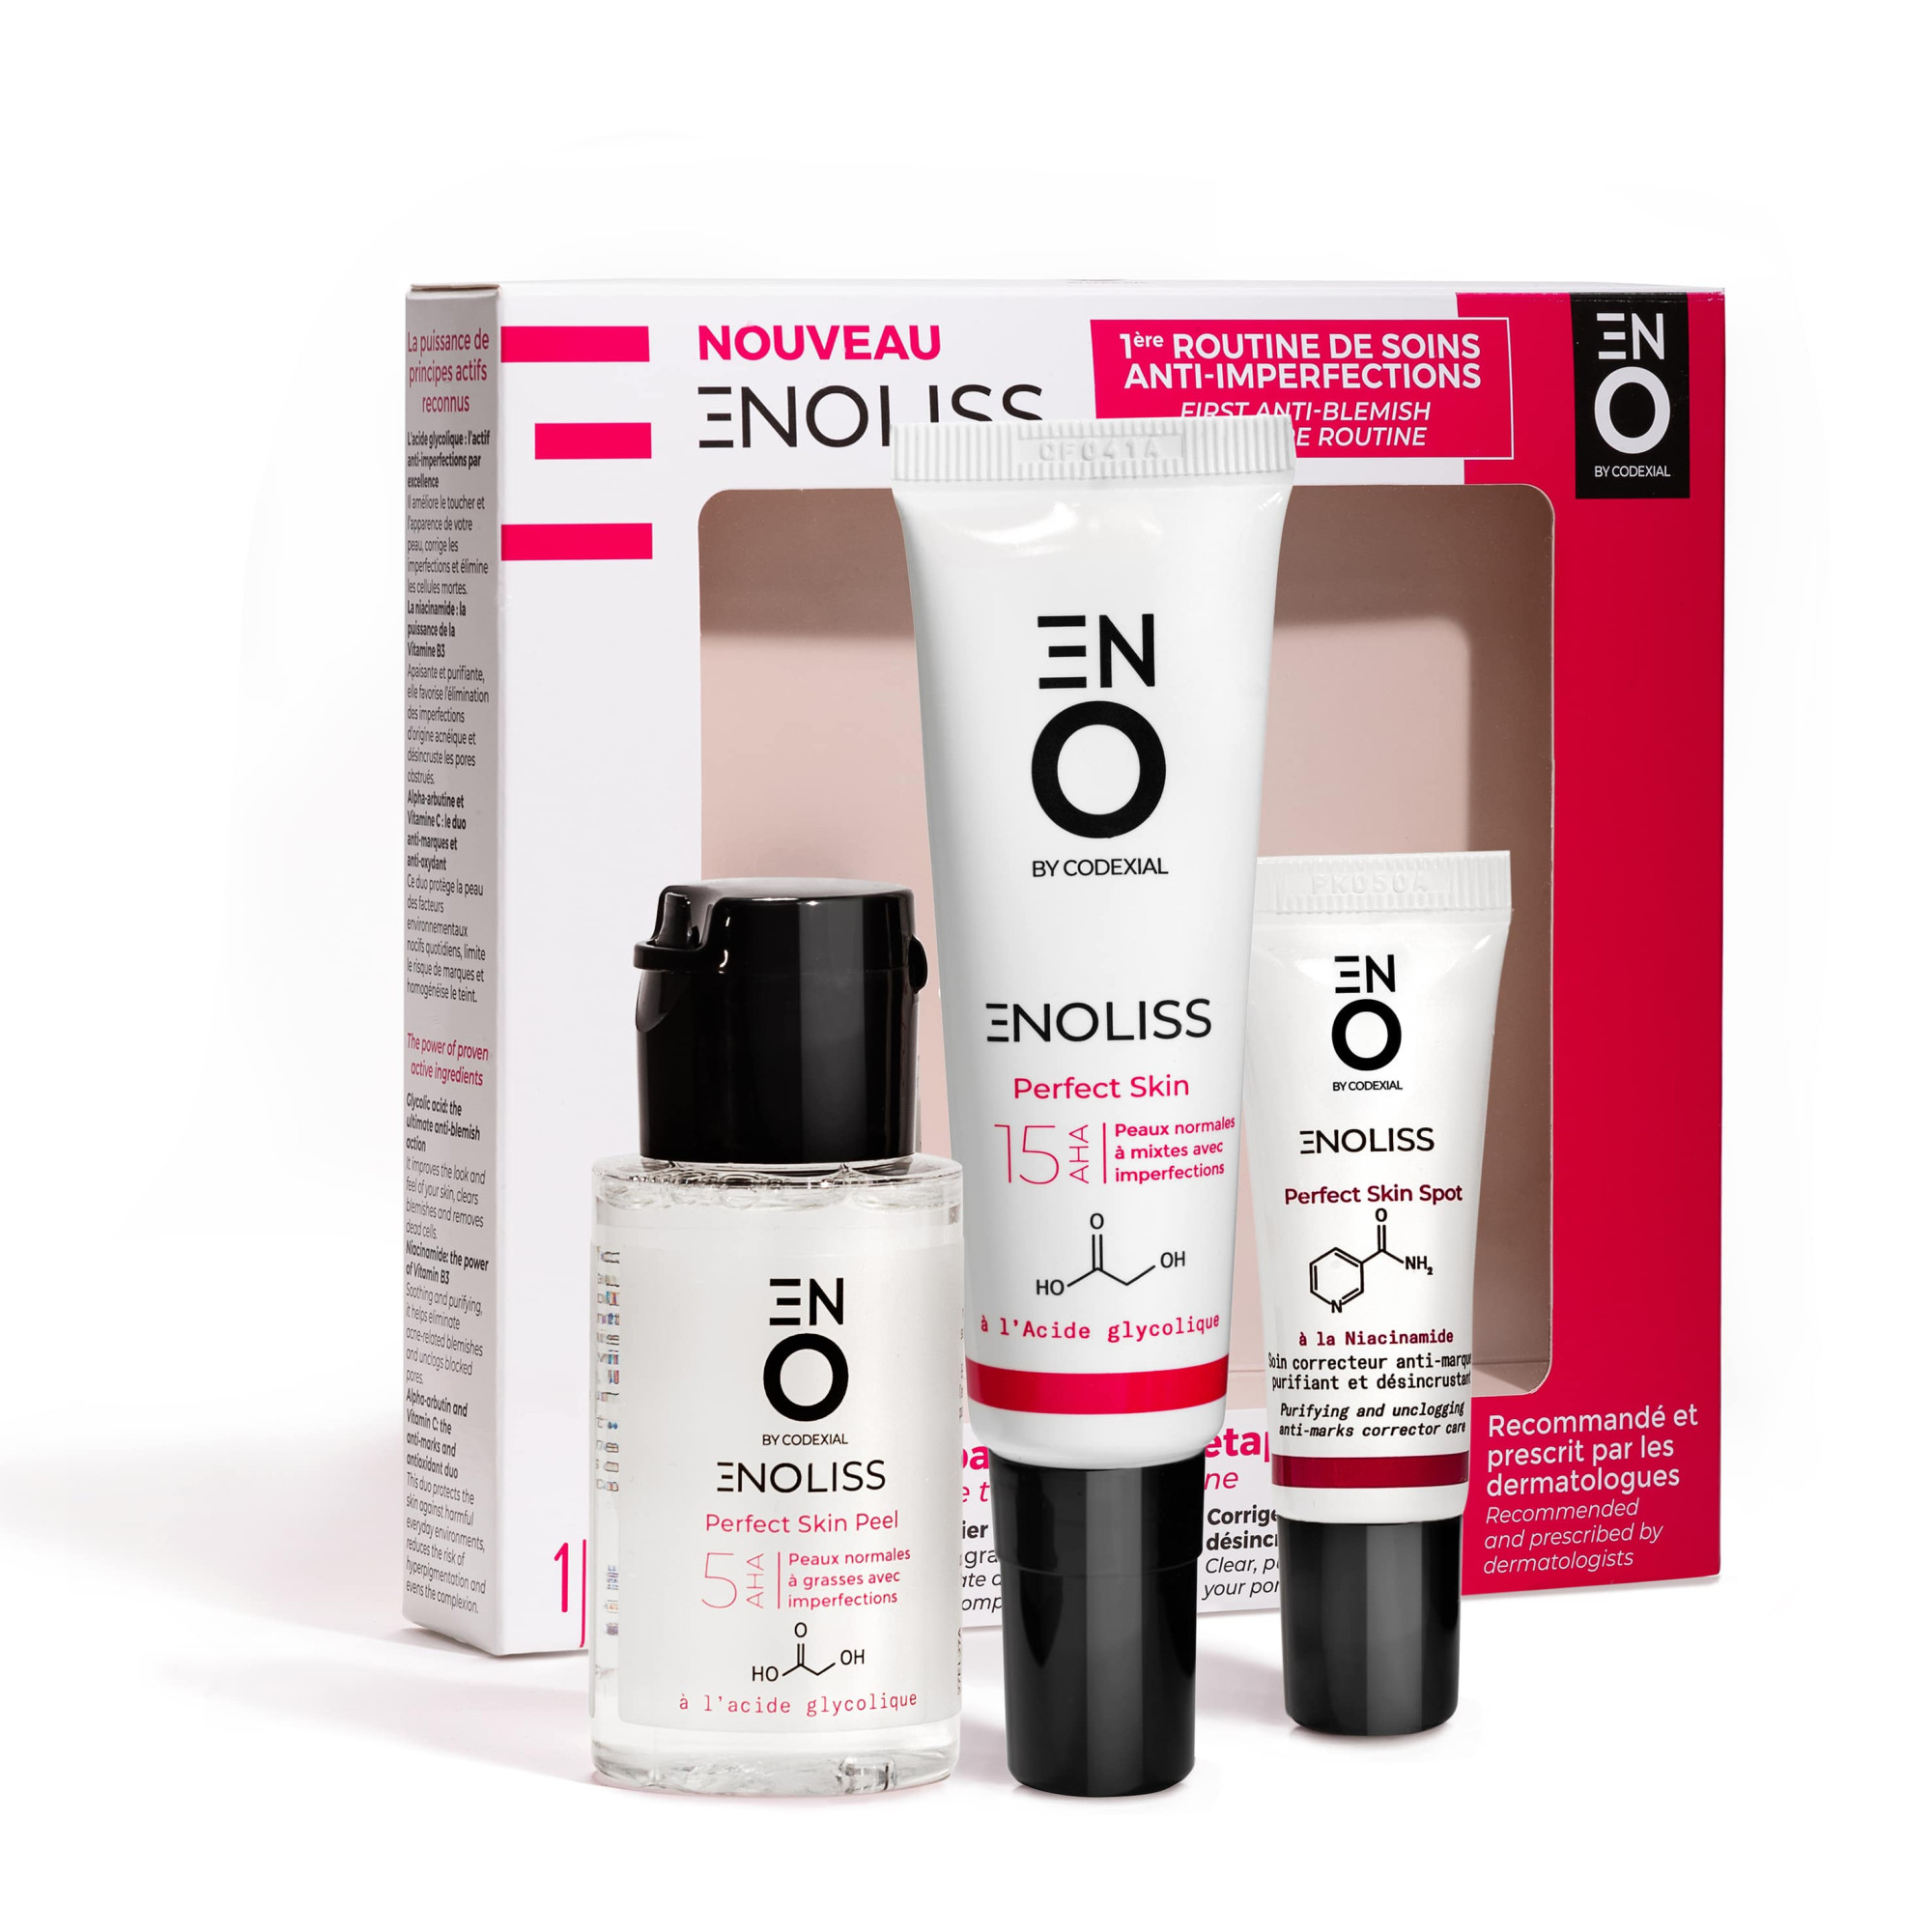 Coffret 3 produits ENO composée d'une routine de soins micro-peeling contre les imperfections-Image2